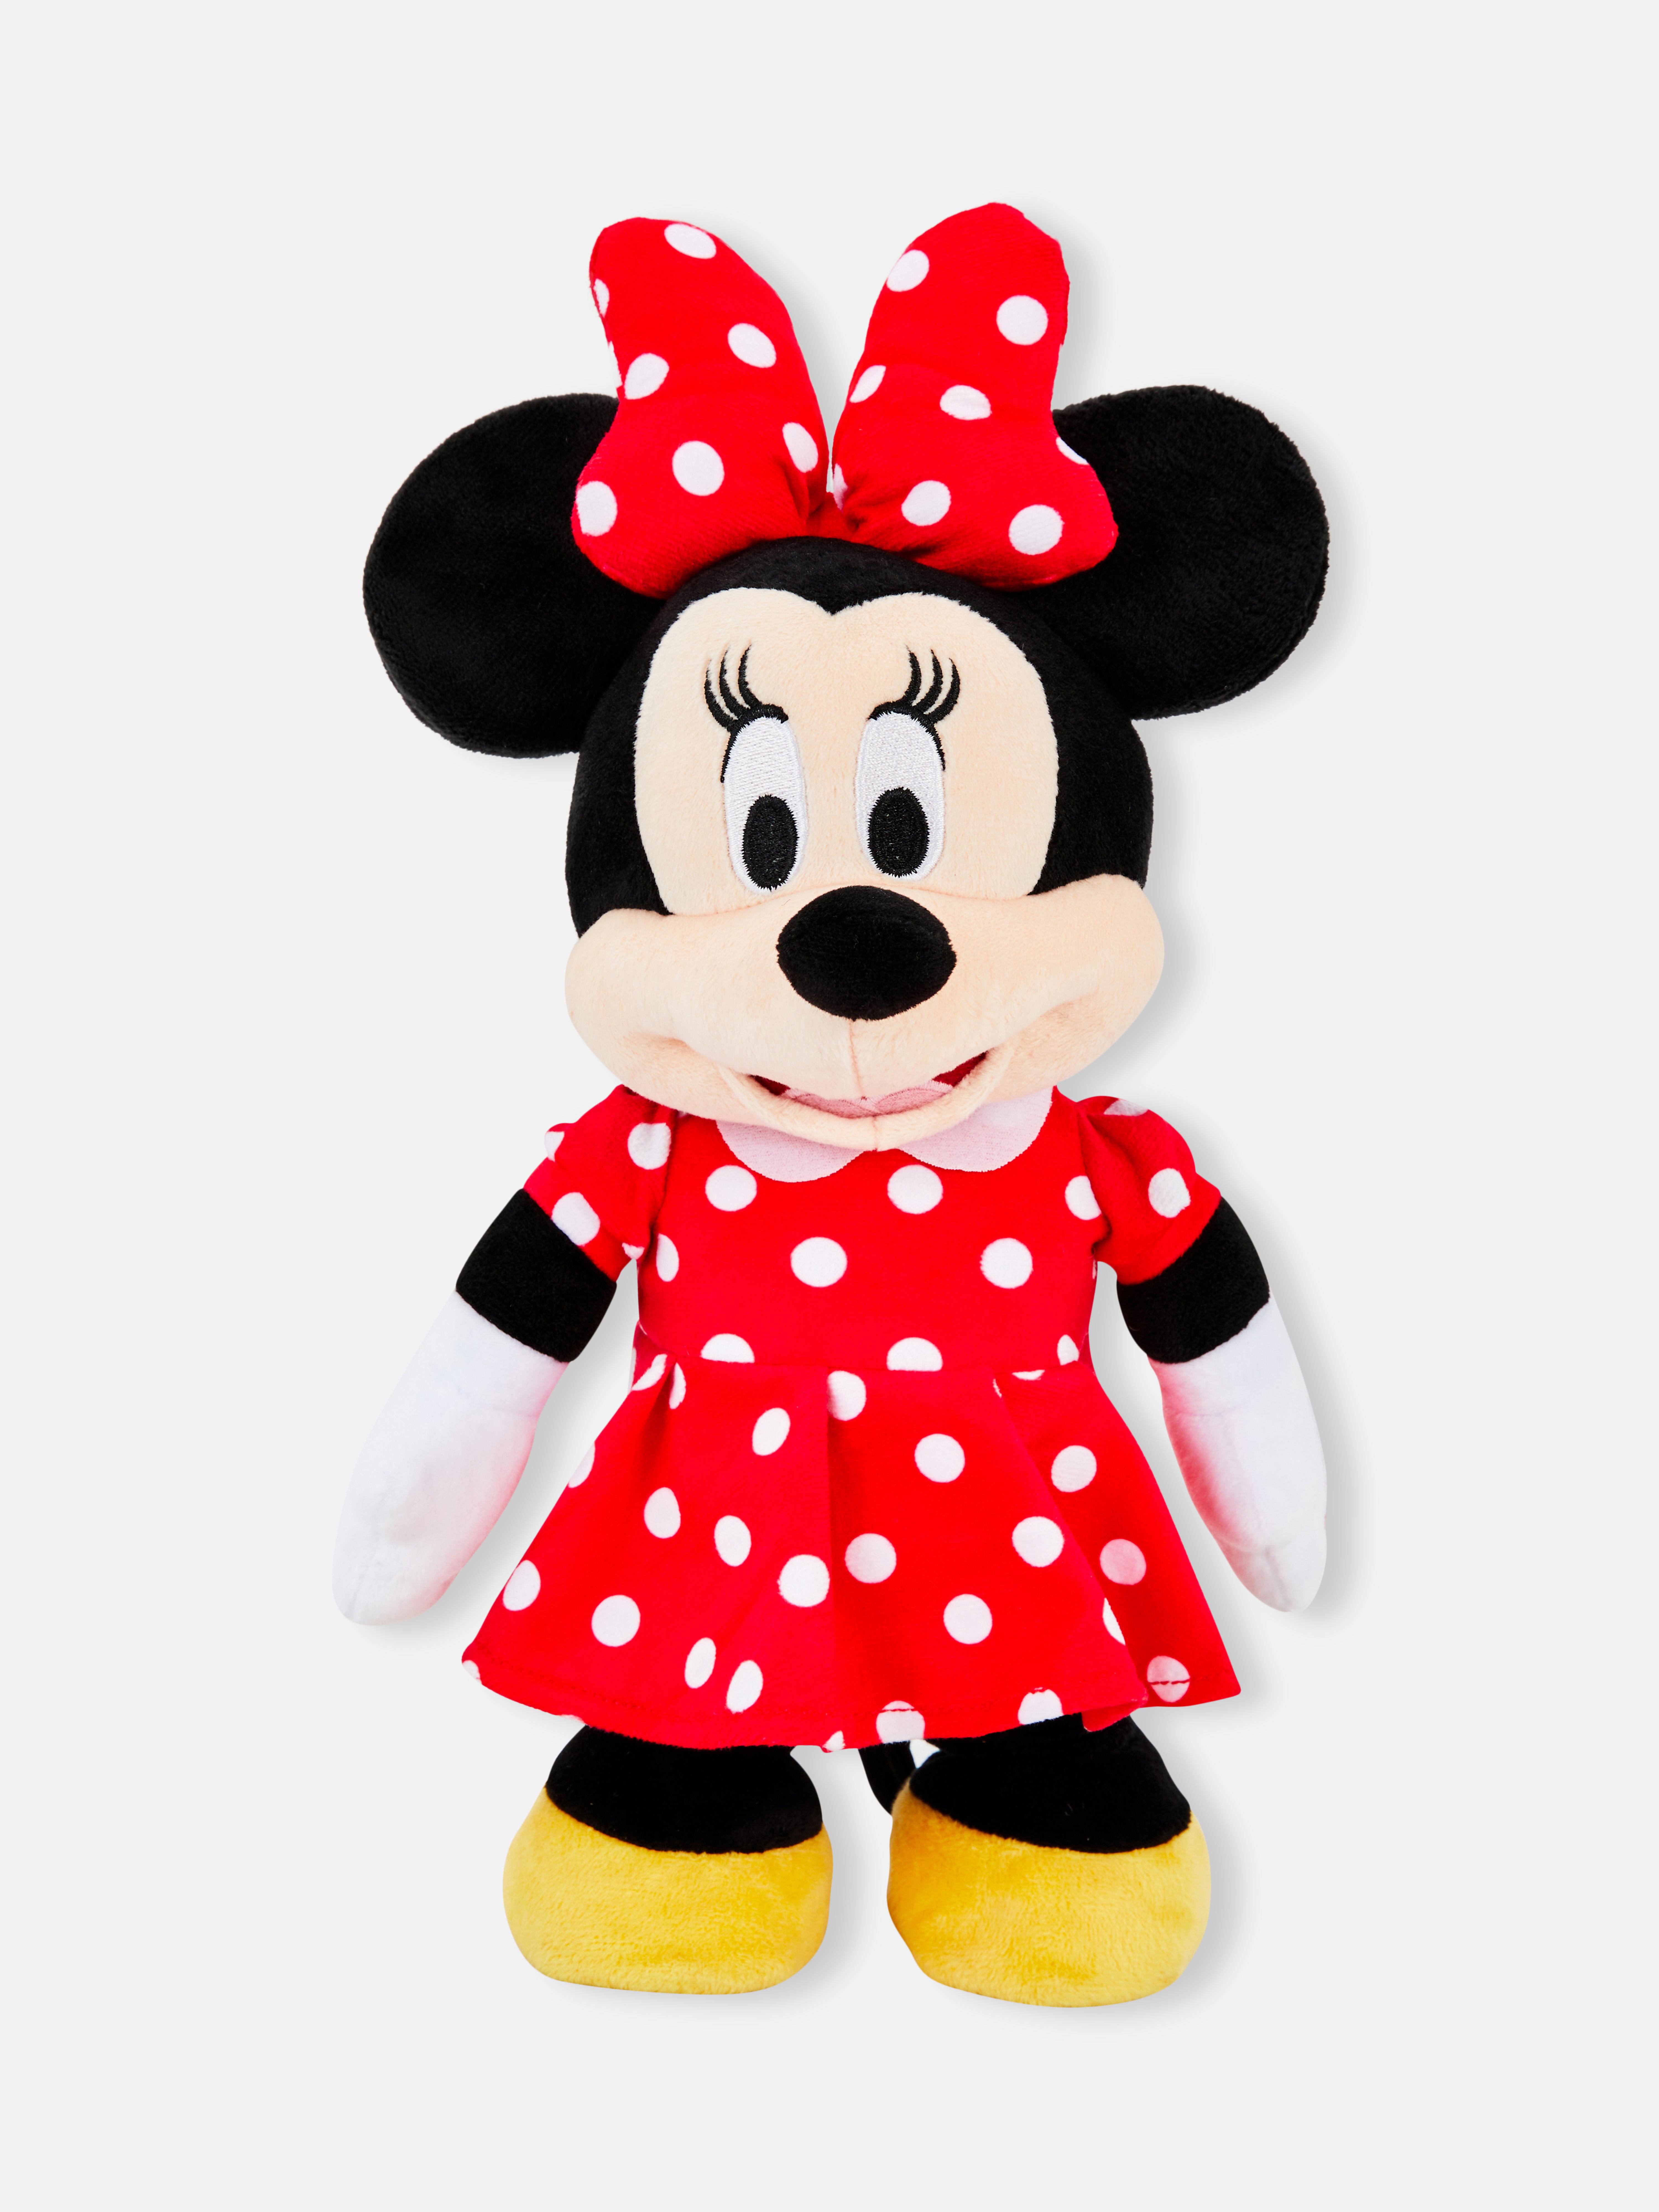 Disney’s Minnie Mouse Plush Toy